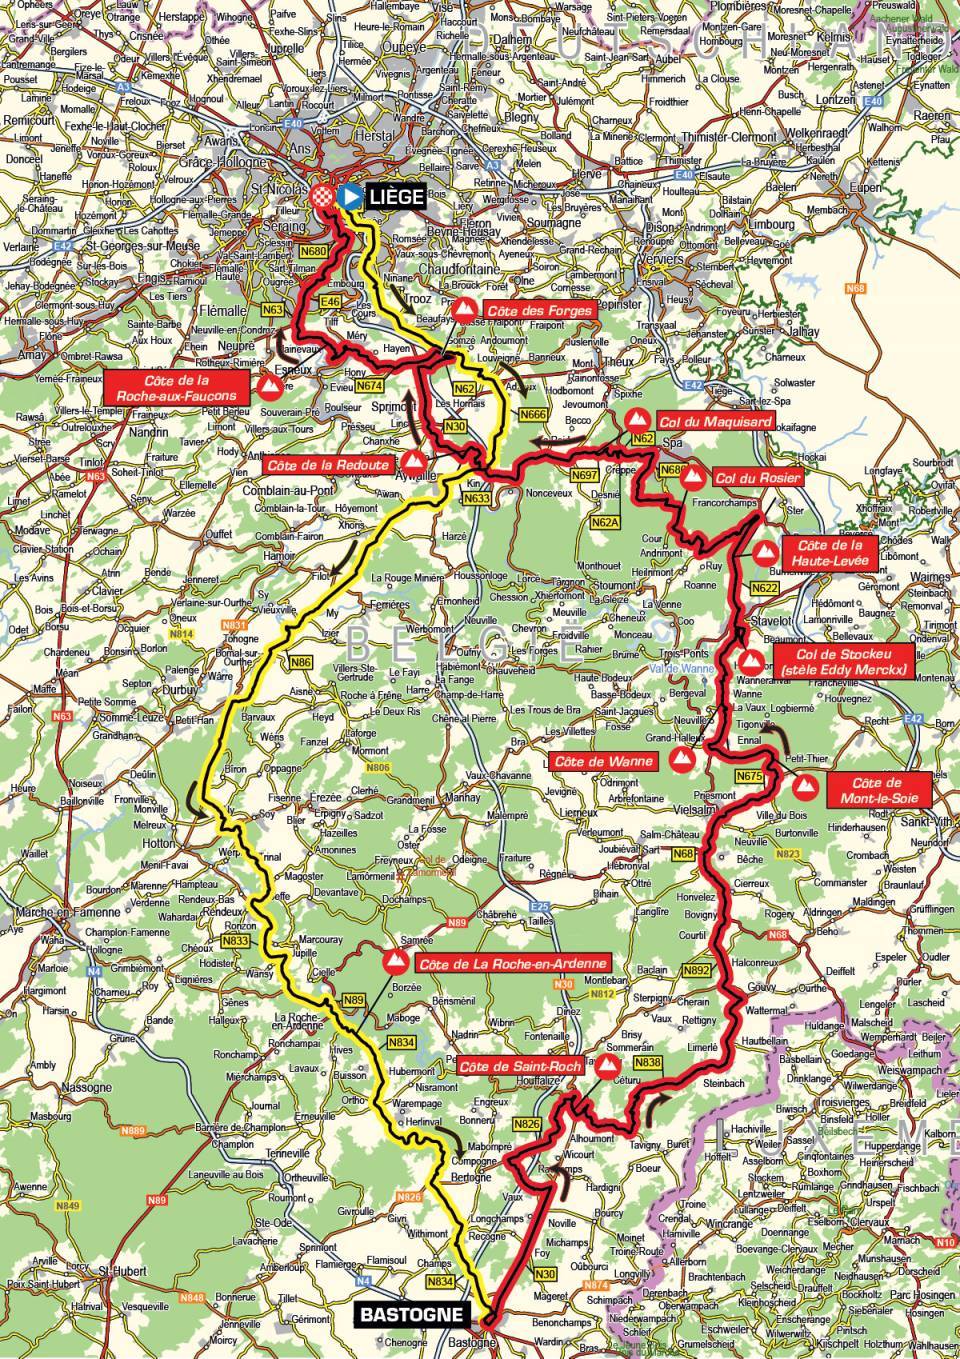 Liege Bastogne Liege Route Map Liège-Bastogne-Liège 2020 - Race Map | Cyclingnews